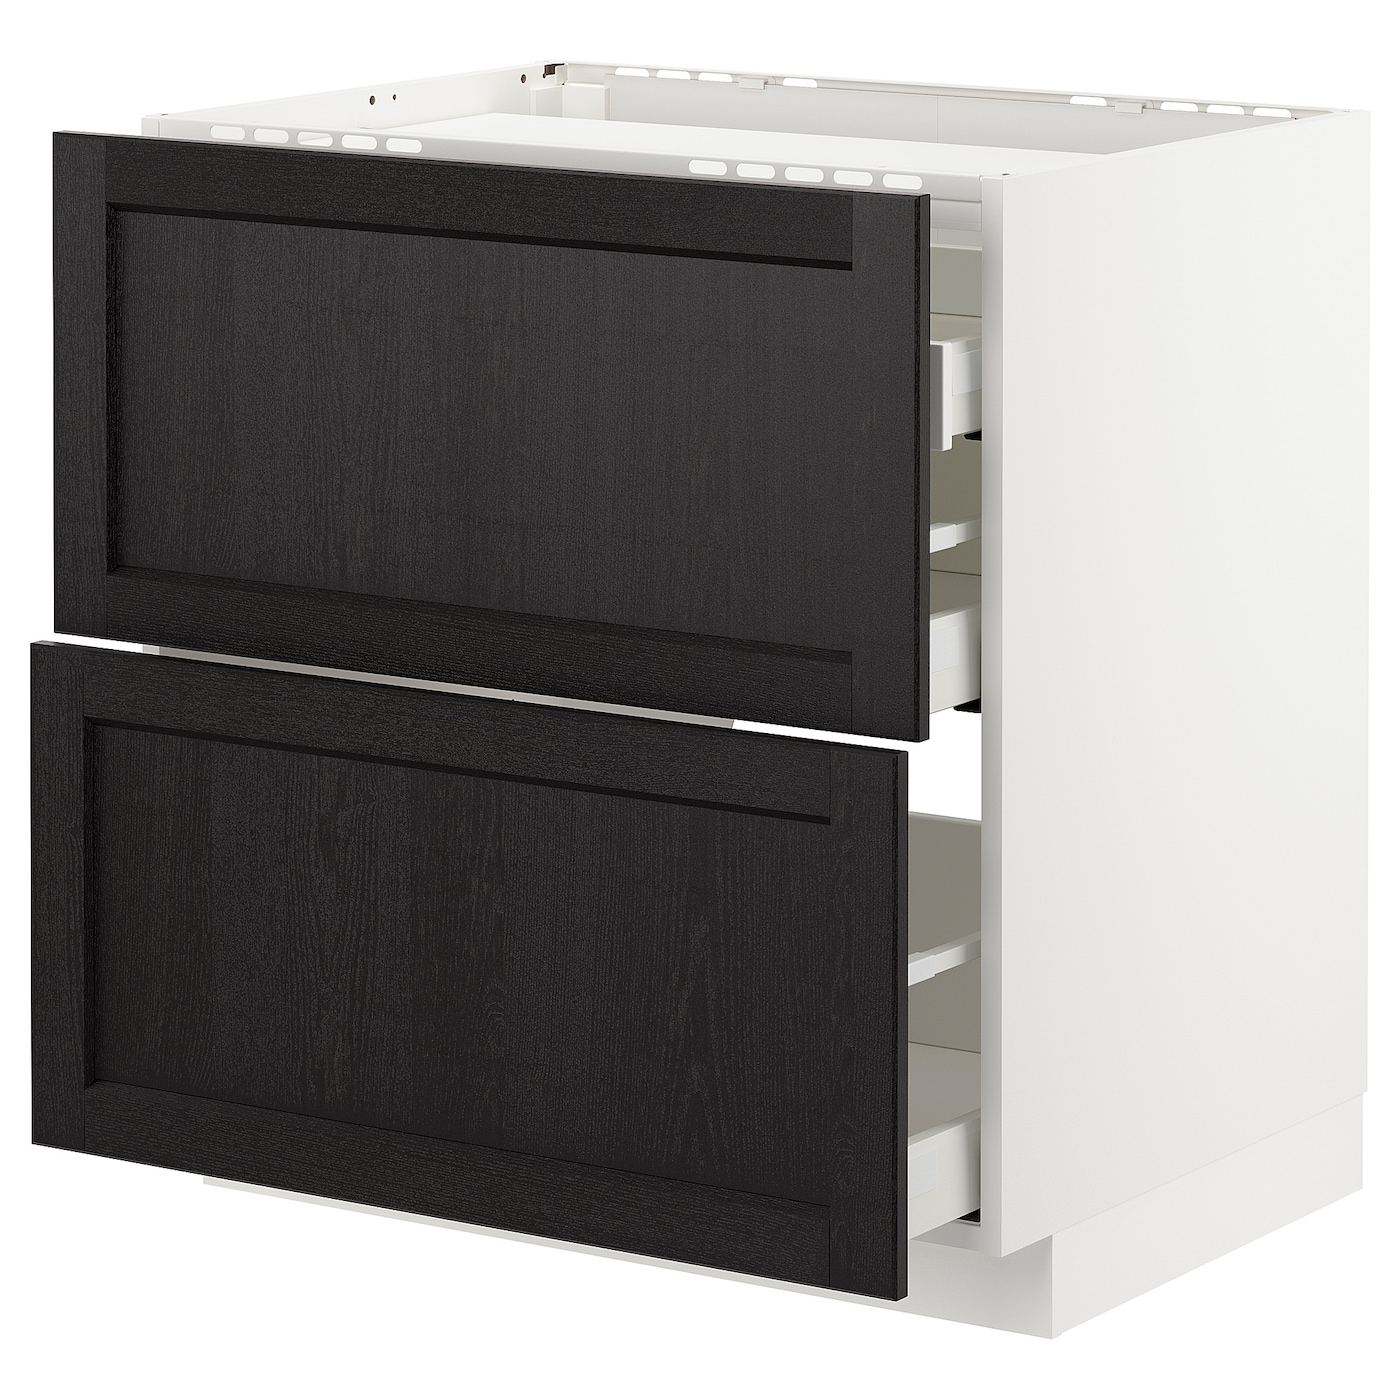 Напольный шкаф  - IKEA METOD MAXIMERA, 88x61,8x80см, белый/черный, МЕТОД МАКСИМЕРА ИКЕА